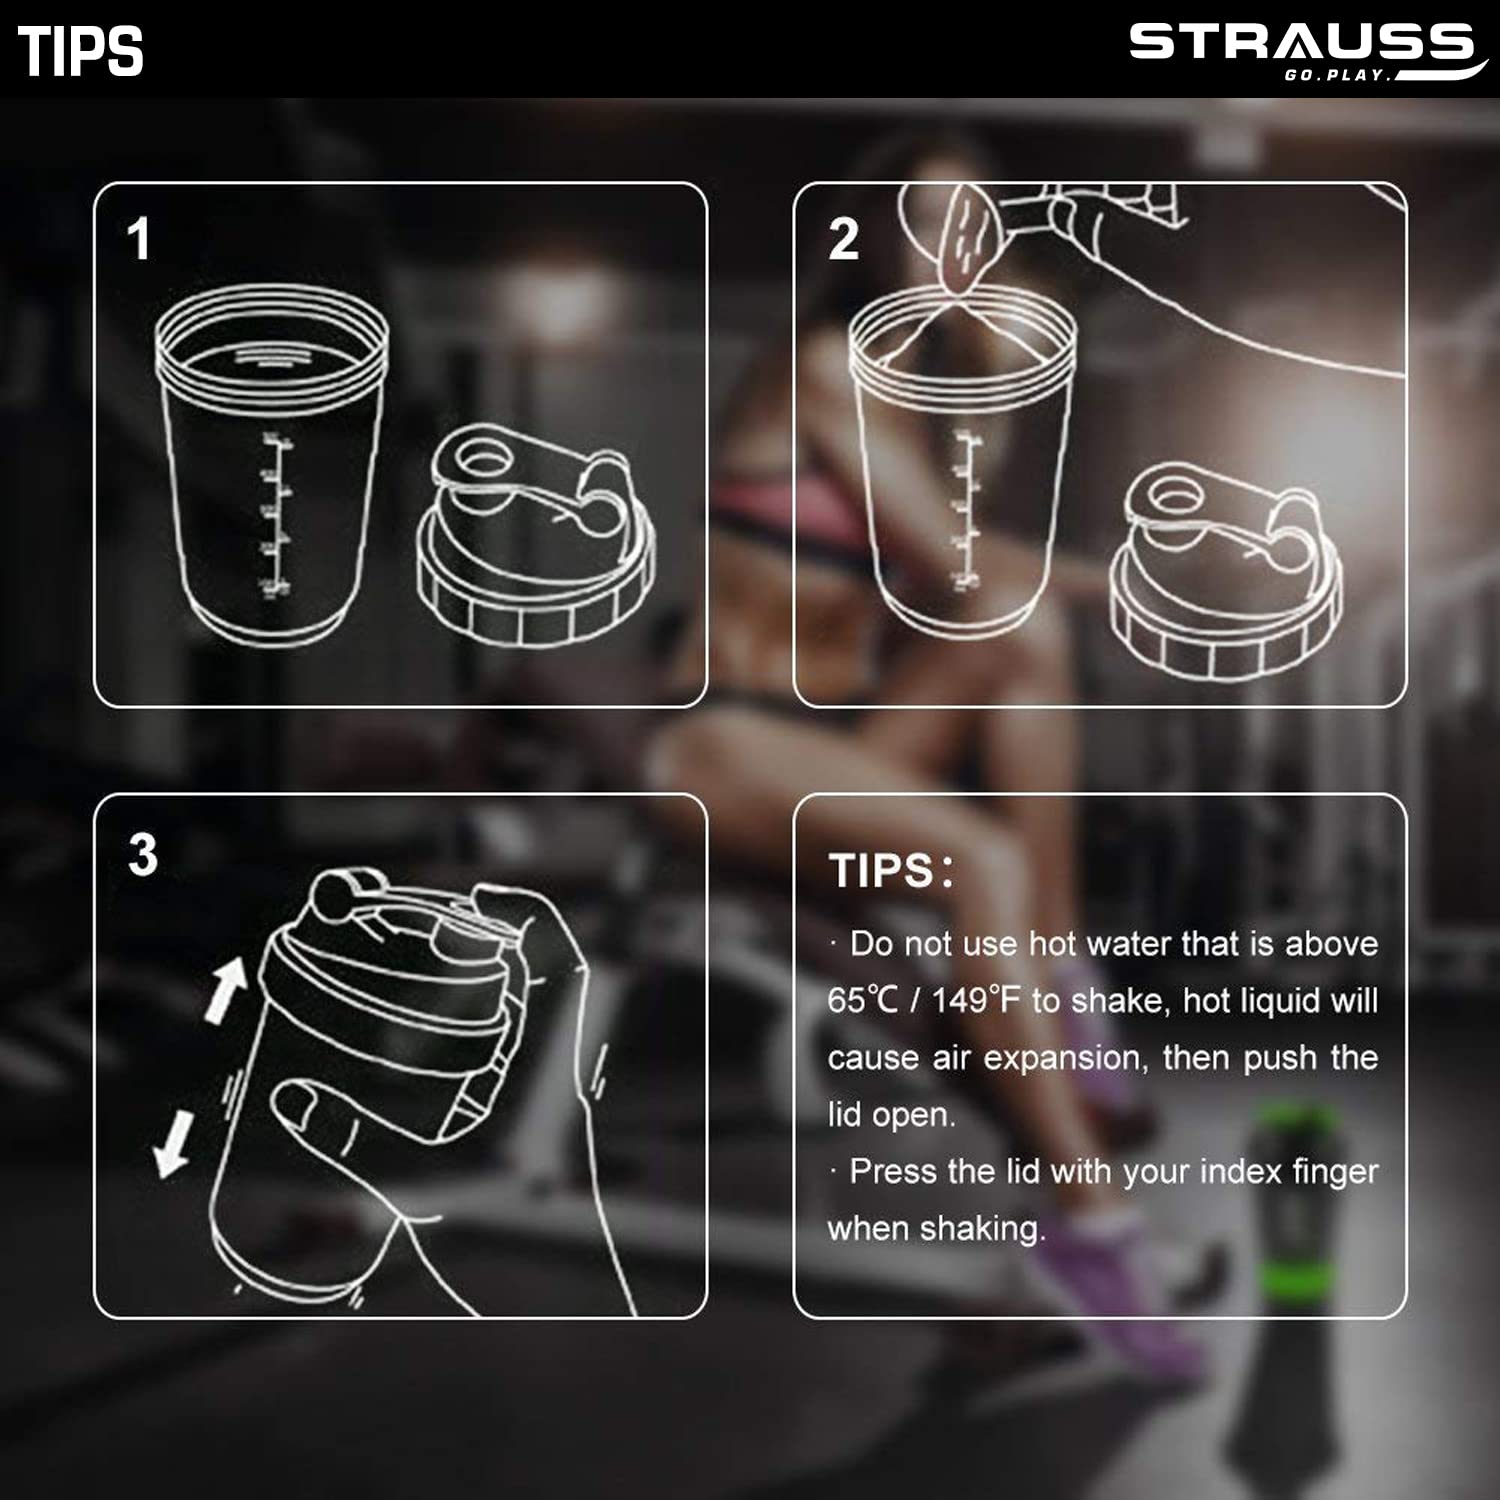 Strauss Energy Shaker Bottle, White Shade, (Orange)